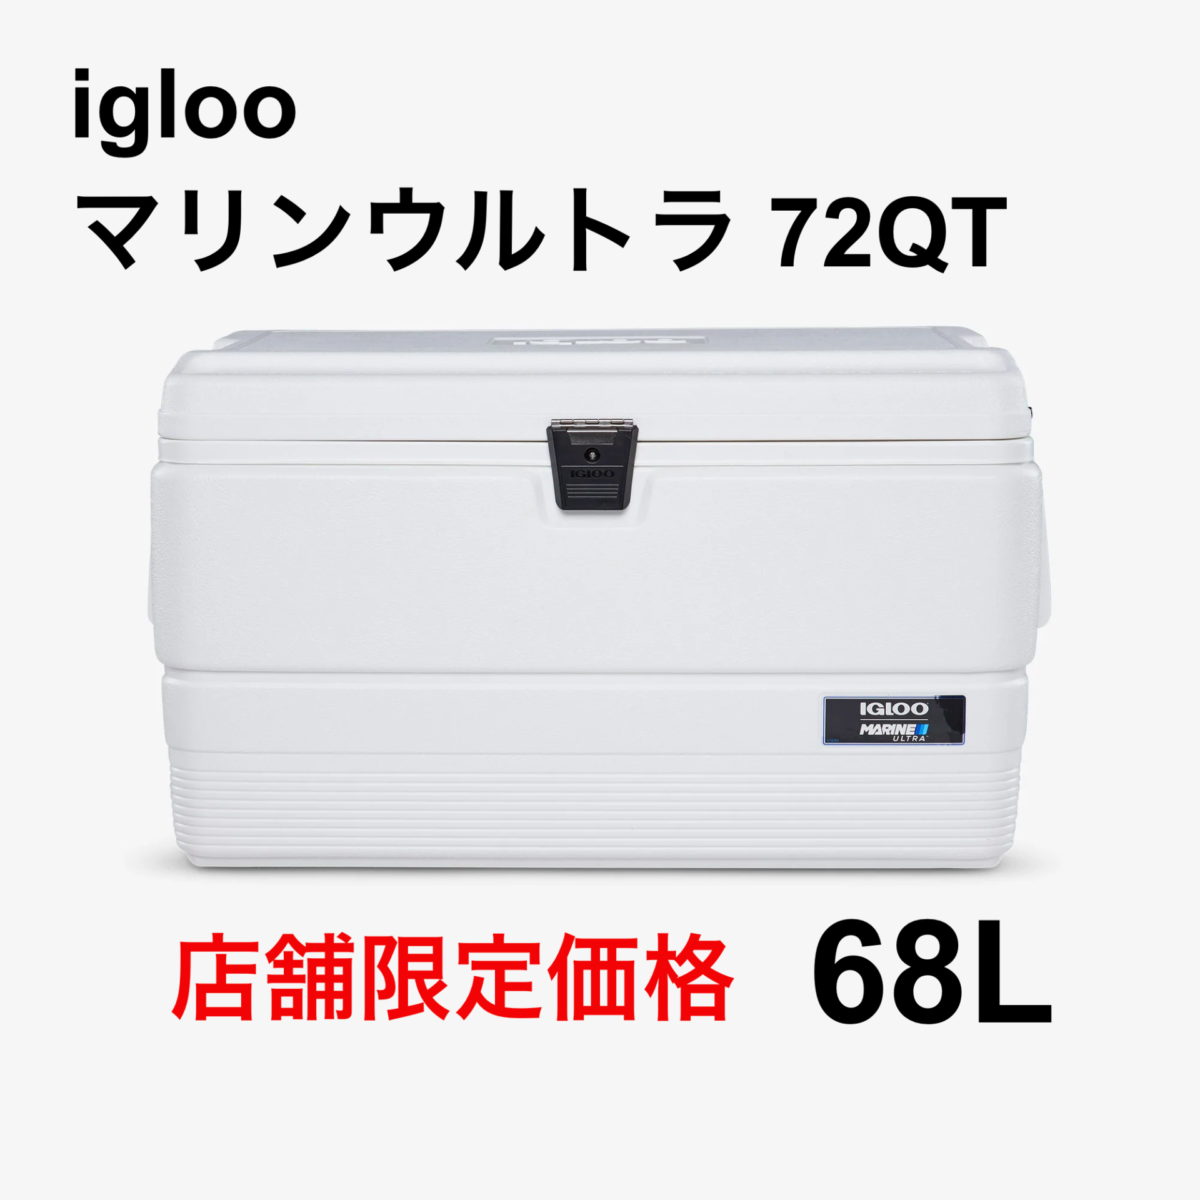 iglooマリンウルトラ72QT(68L) 店舗販売限定 =特別セール品情報=